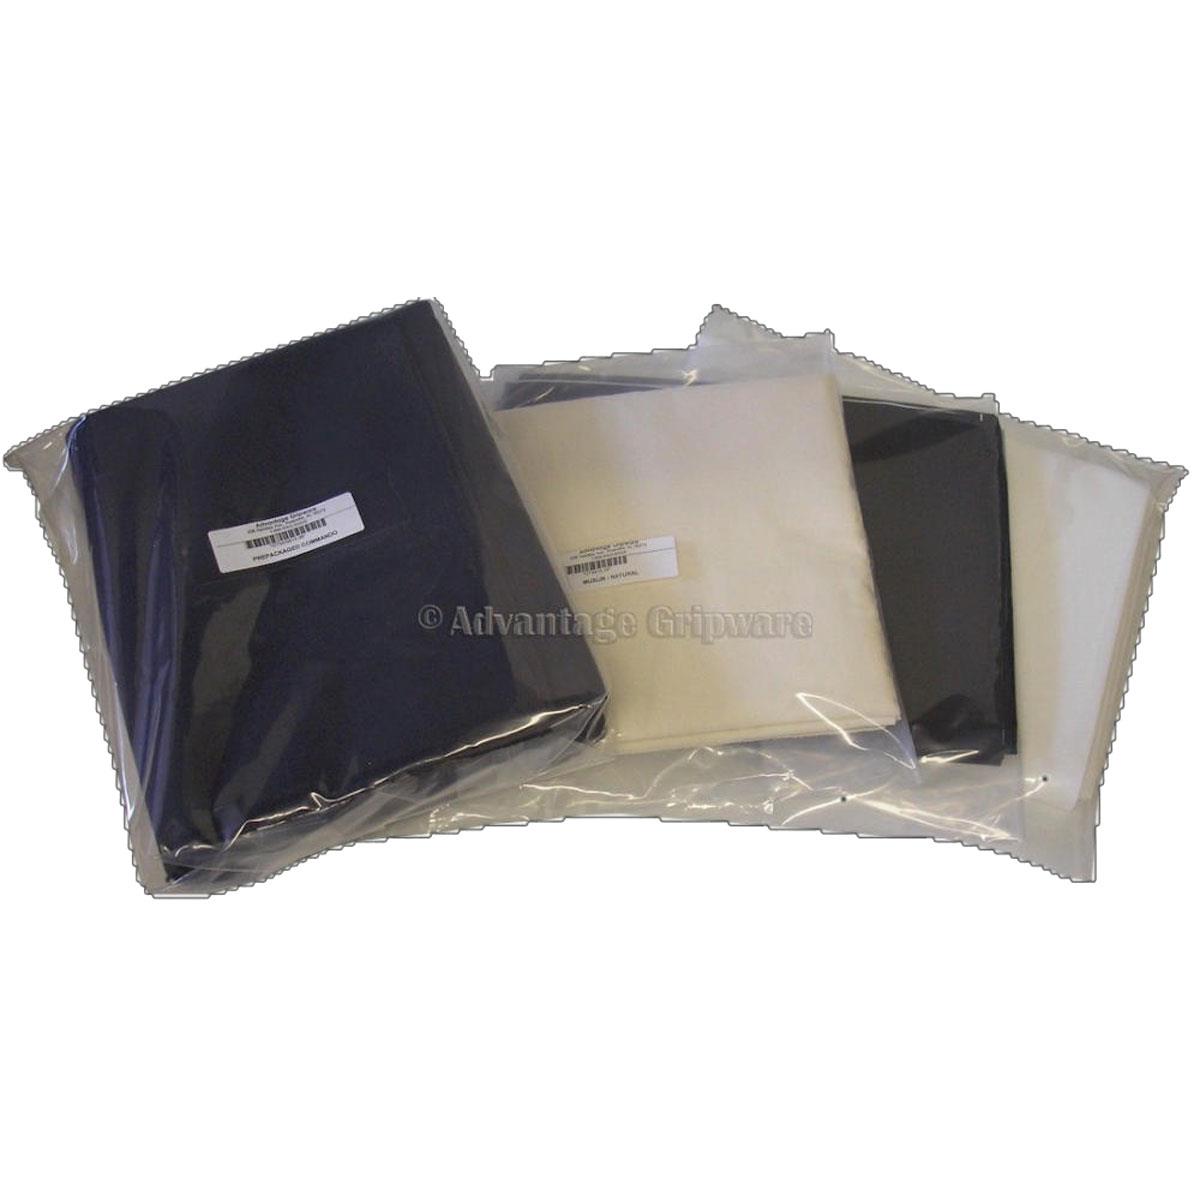 Image of Advantage Gripware 16 Oz Commando Cloth Pre-Packaged Fabric